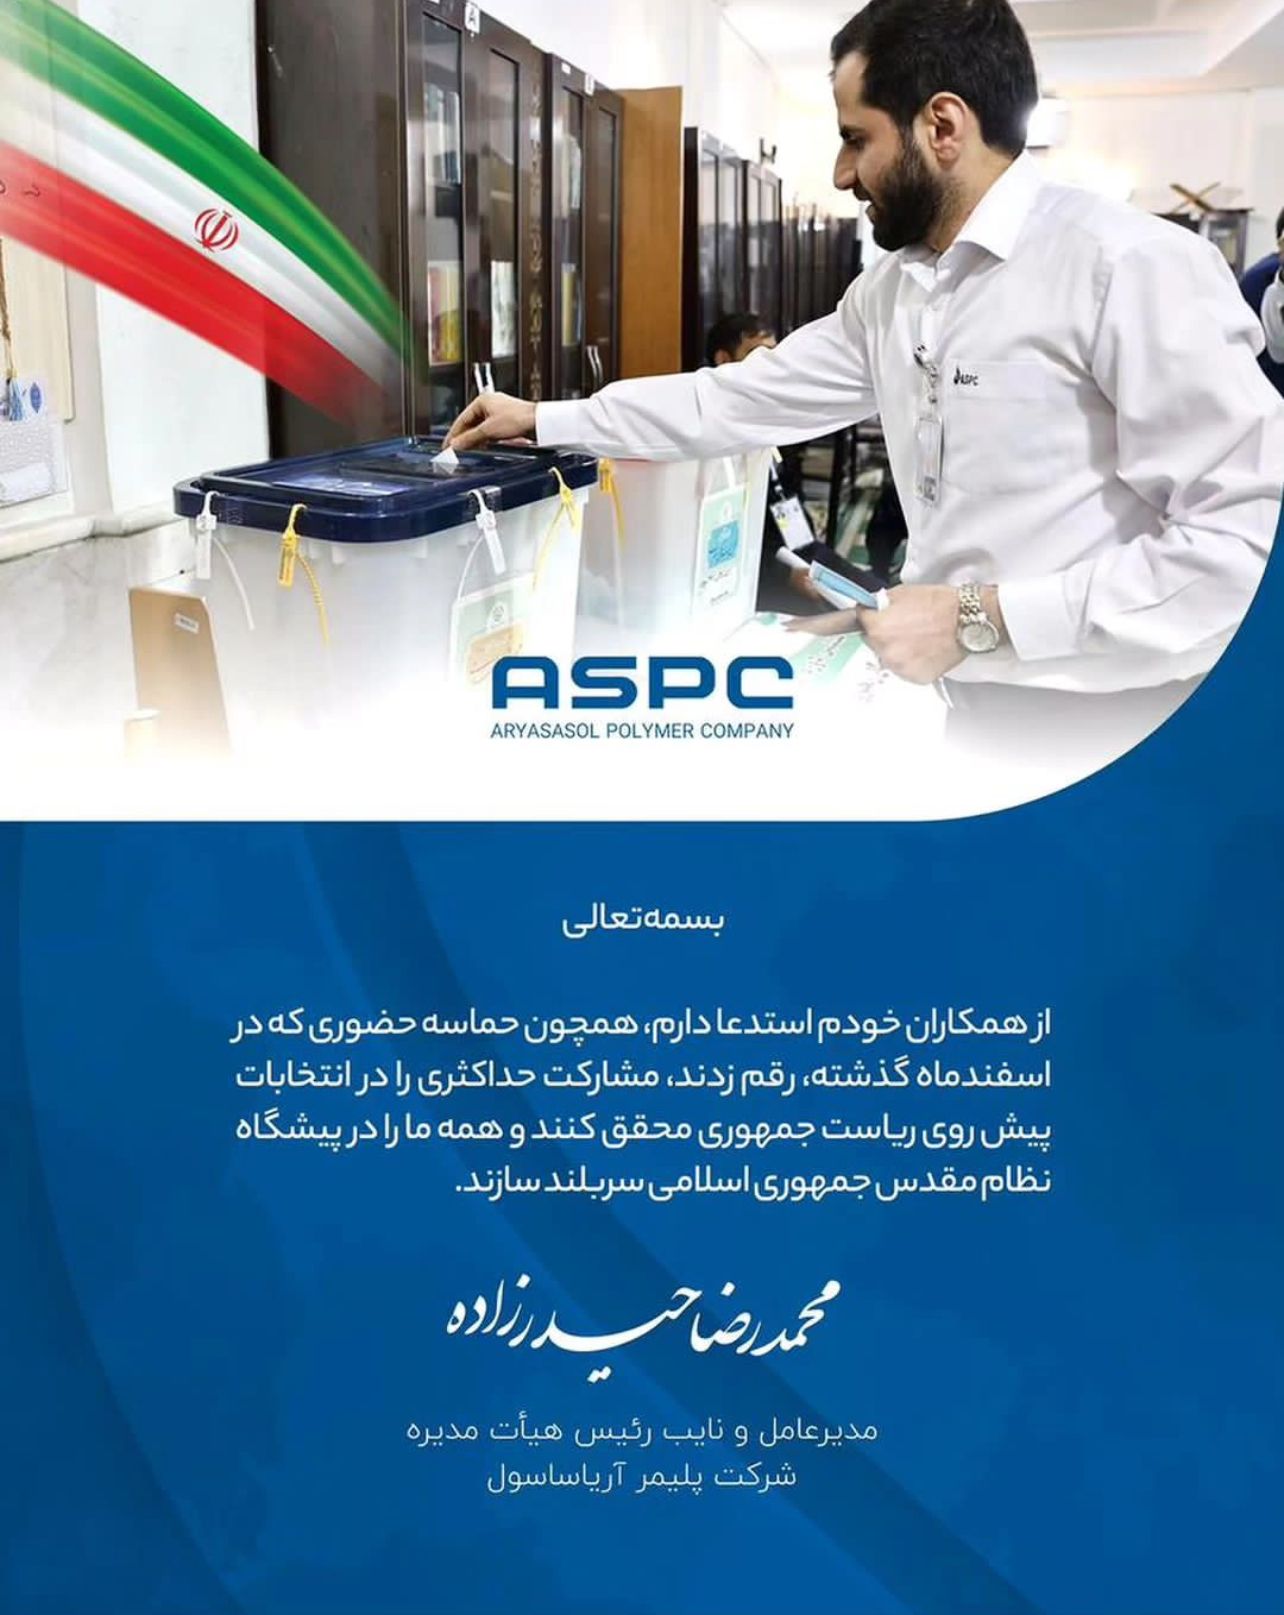 محمدرضا حیدرزاده؛ طی صدور پیامی، همکاران خود در این شرکت را به رویداد حماسی پیش رو فراخواند.